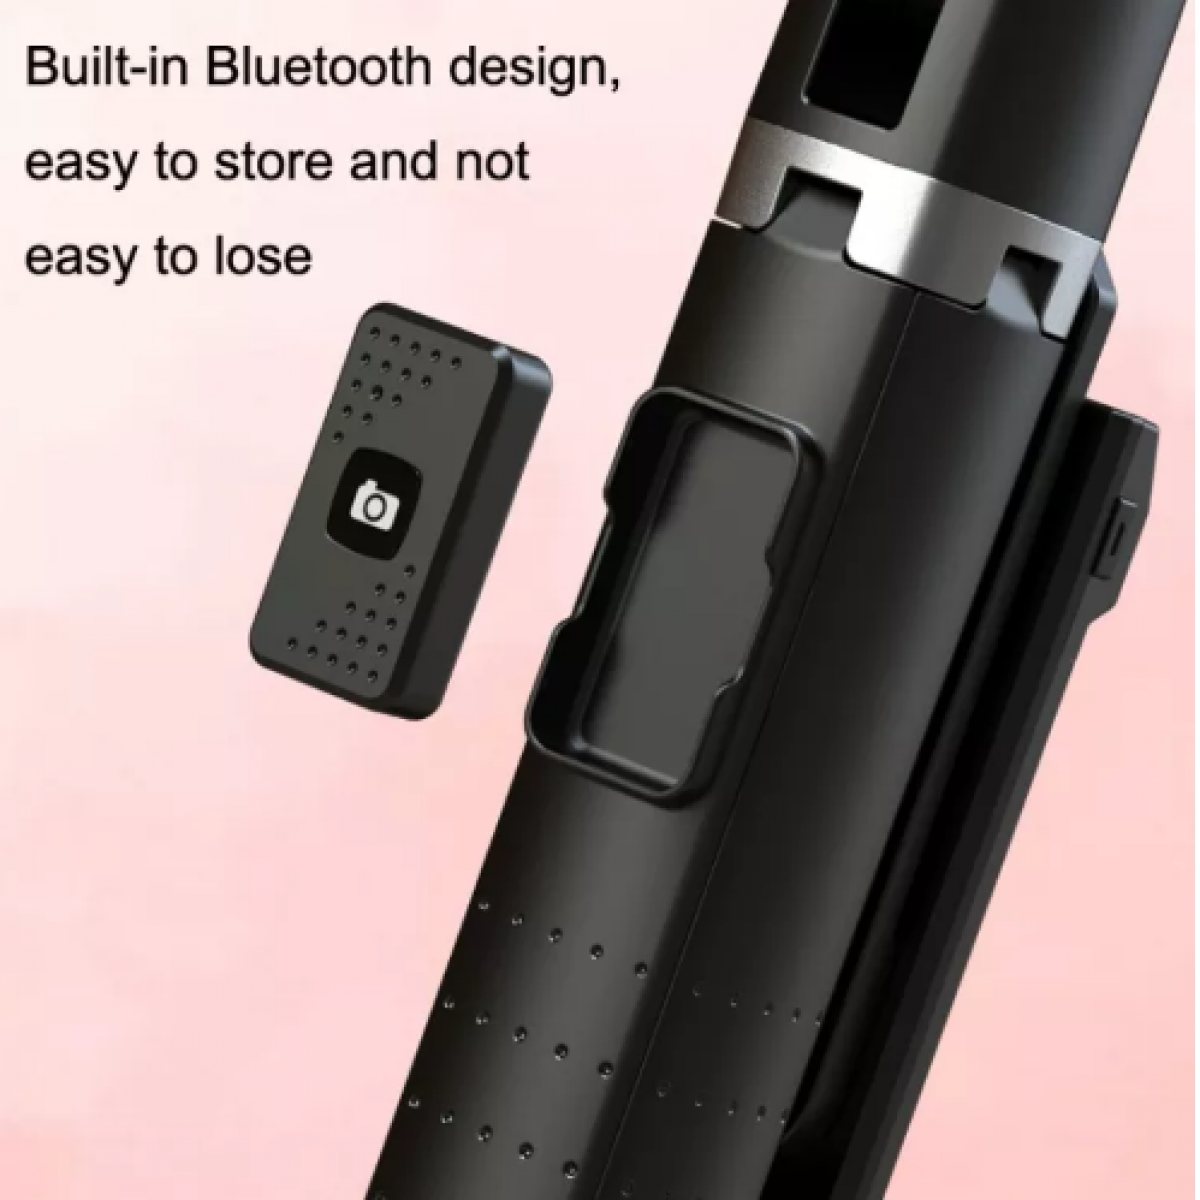 Ständer, INF Stand-Selfie-Stick Schwarz Bluetooth-Fernbedienung mit kabelloser Selfie-Stick/mobiler Mobiler